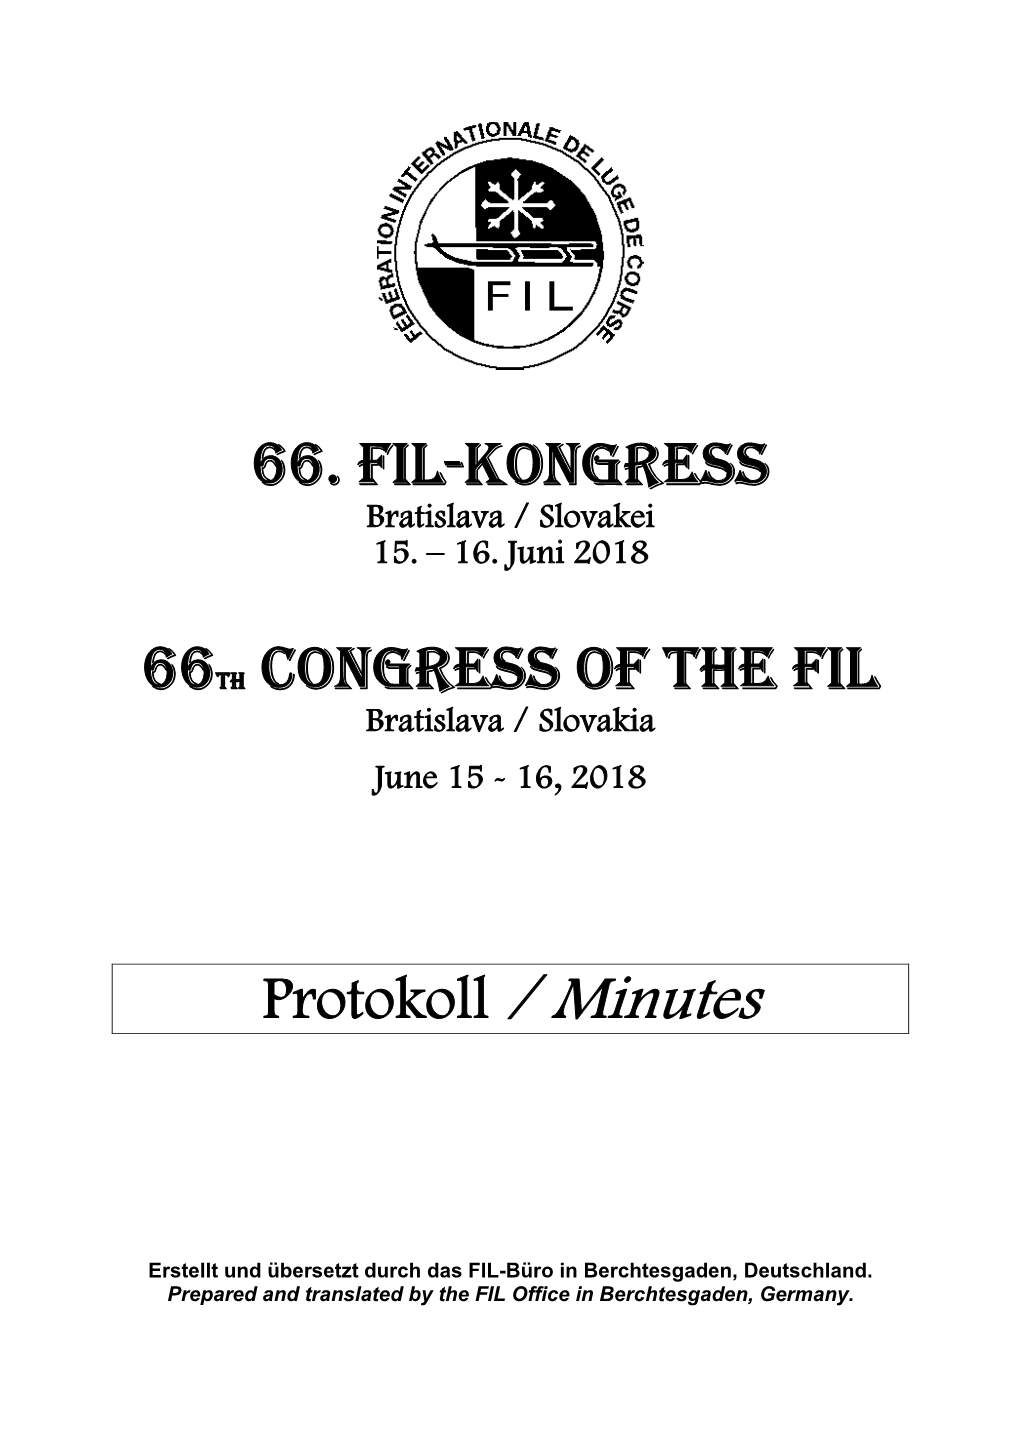 66. FIL-Kongress 66Th Congress of the FIL Protokoll / Minutes